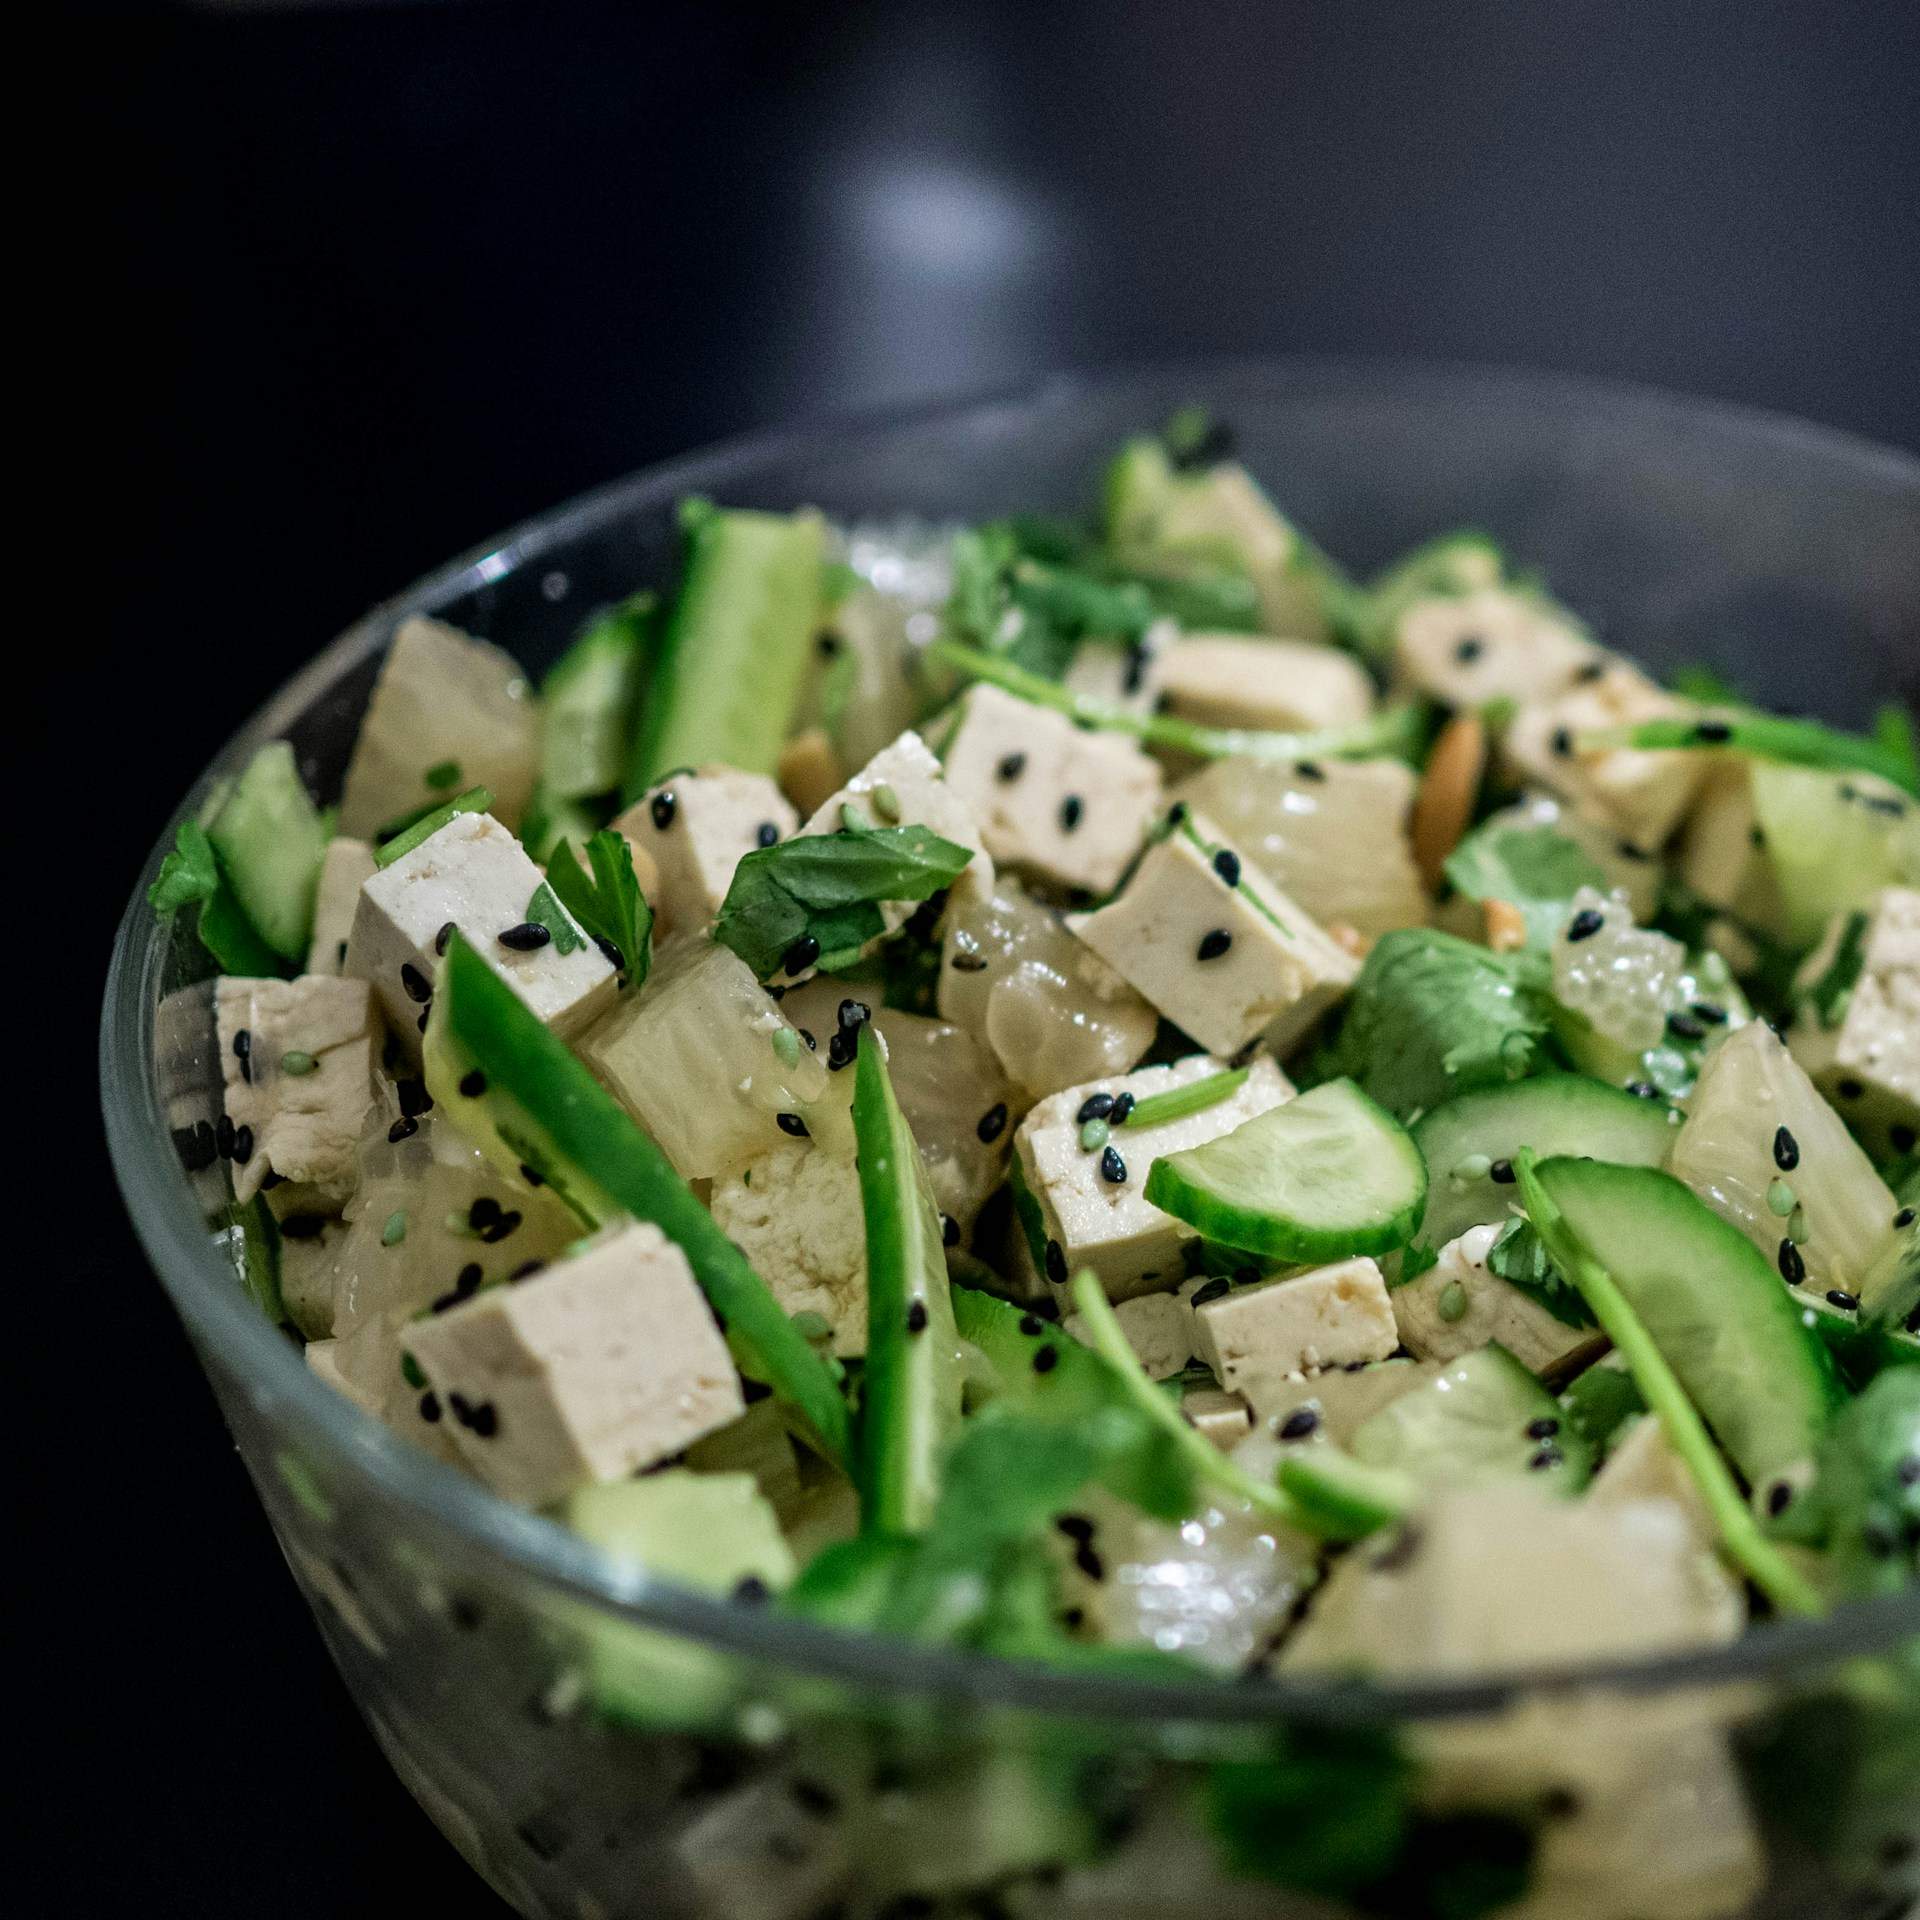 El tofu: molt més que un simple substitut de la carn